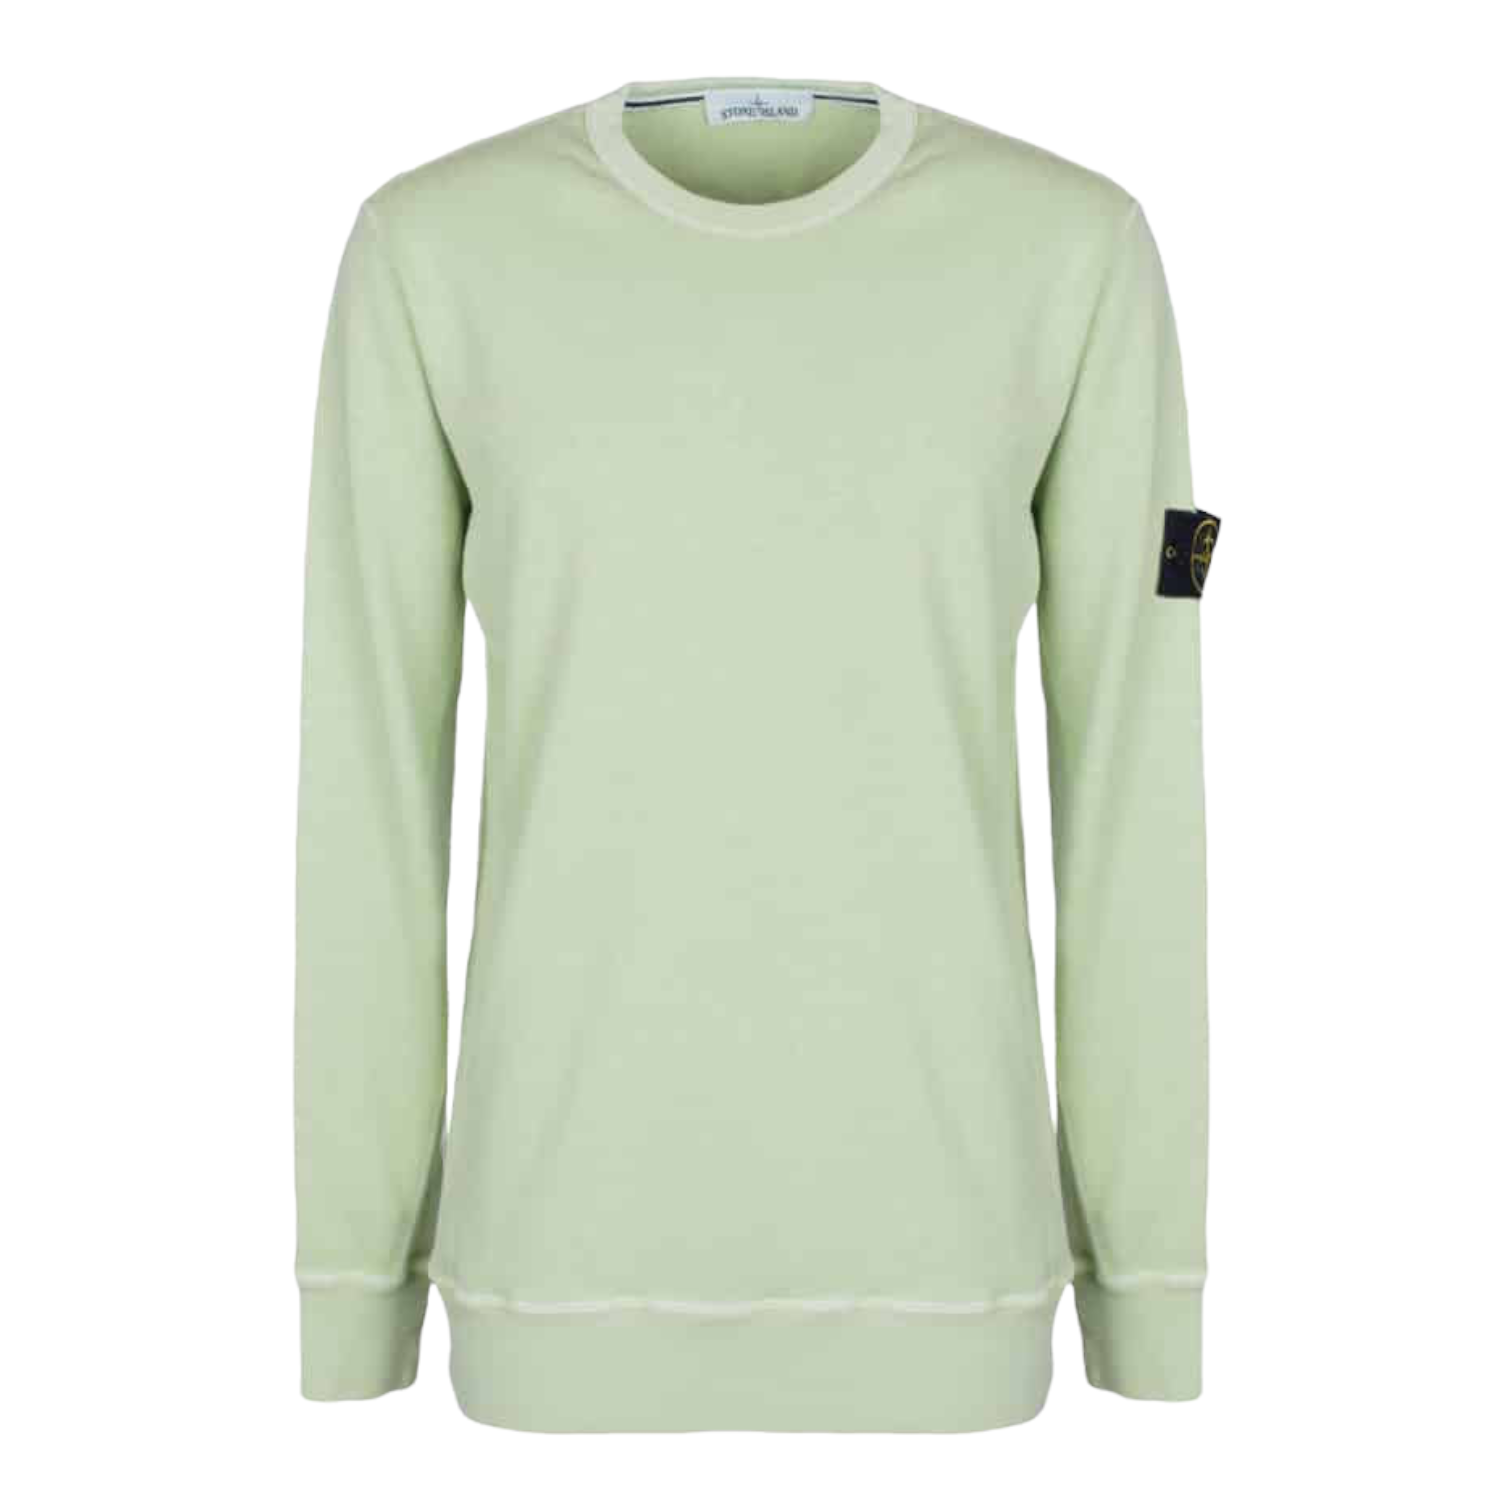 Stone Island Sweatshirt - Size S - HighEndMarkets - Designer Menswear